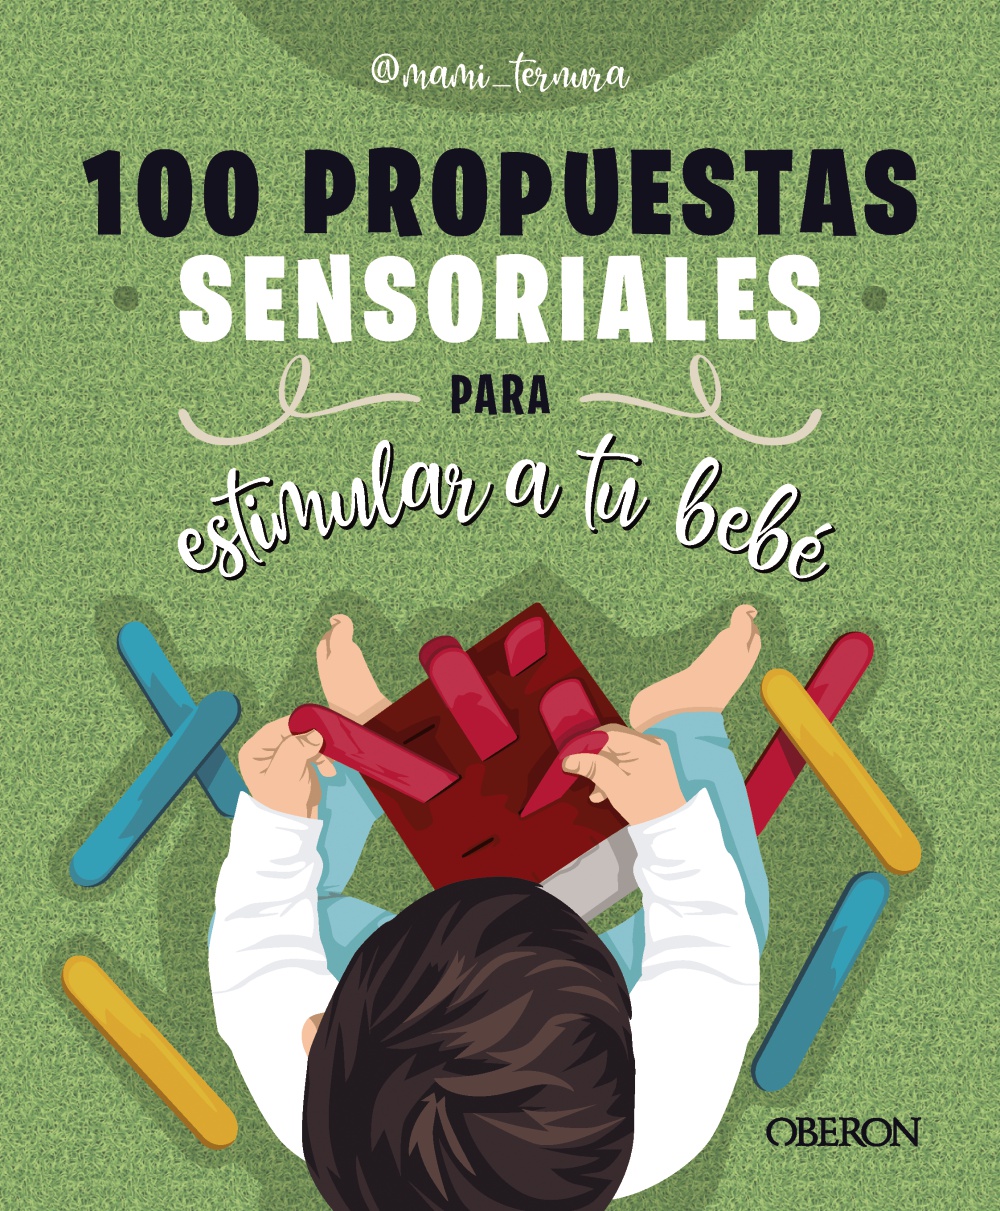 100-propuestas-sensoriales-para-estimular-a-tu-bebe-978-84-415-5031-5.jpg